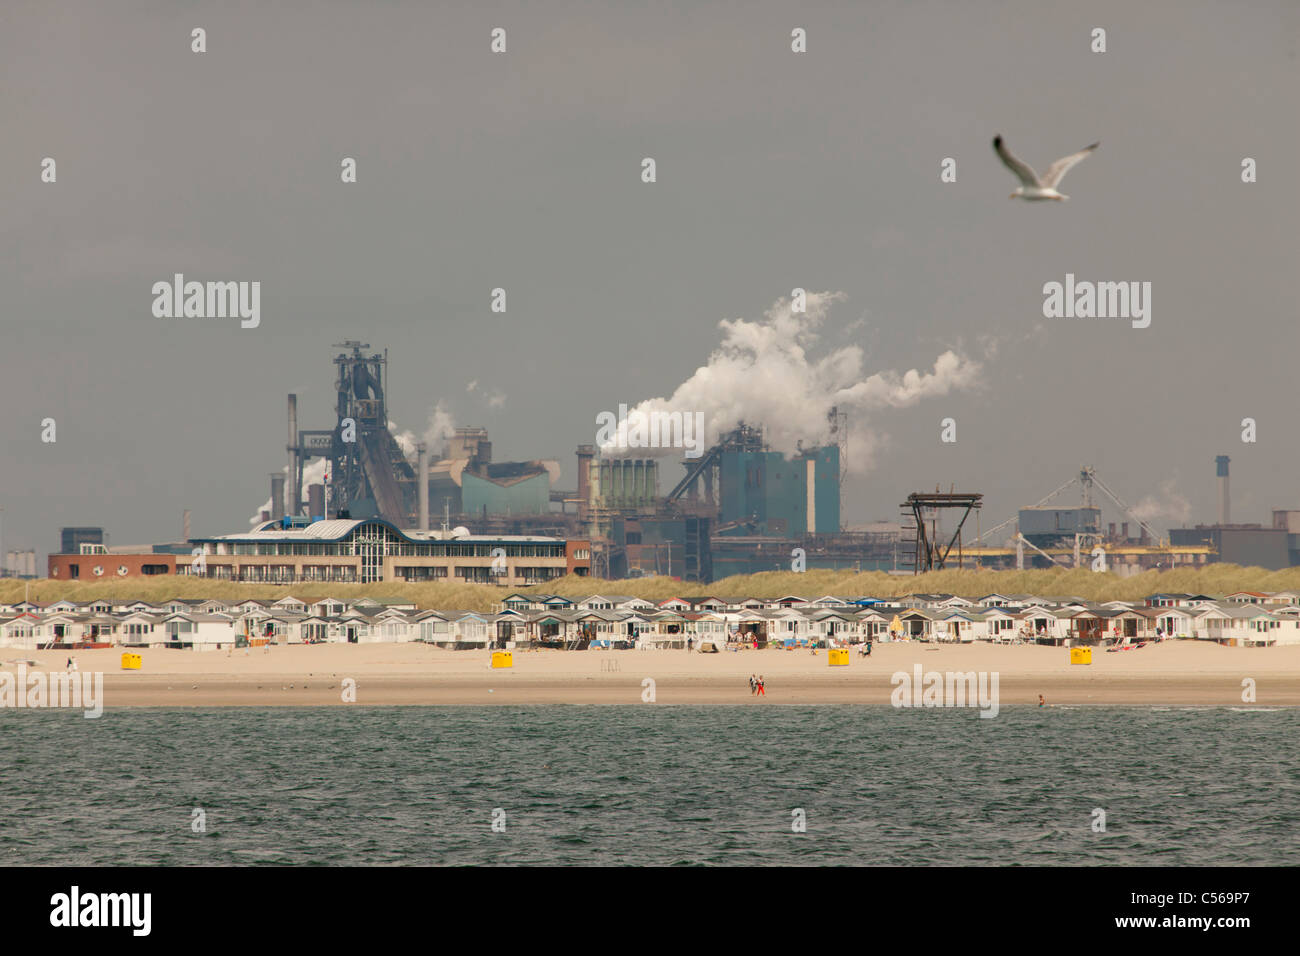 Les Pays-Bas, IJmuiden, cabines de plage. Contexte Tata Steel factory, les hauts fourneaux. Banque D'Images